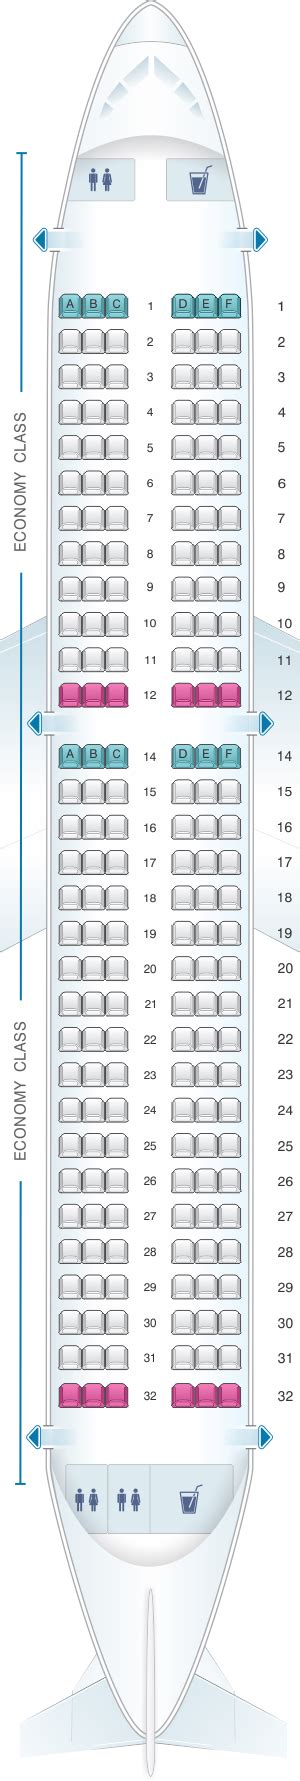 Lufthansa Seat Map A320 Bios Pics